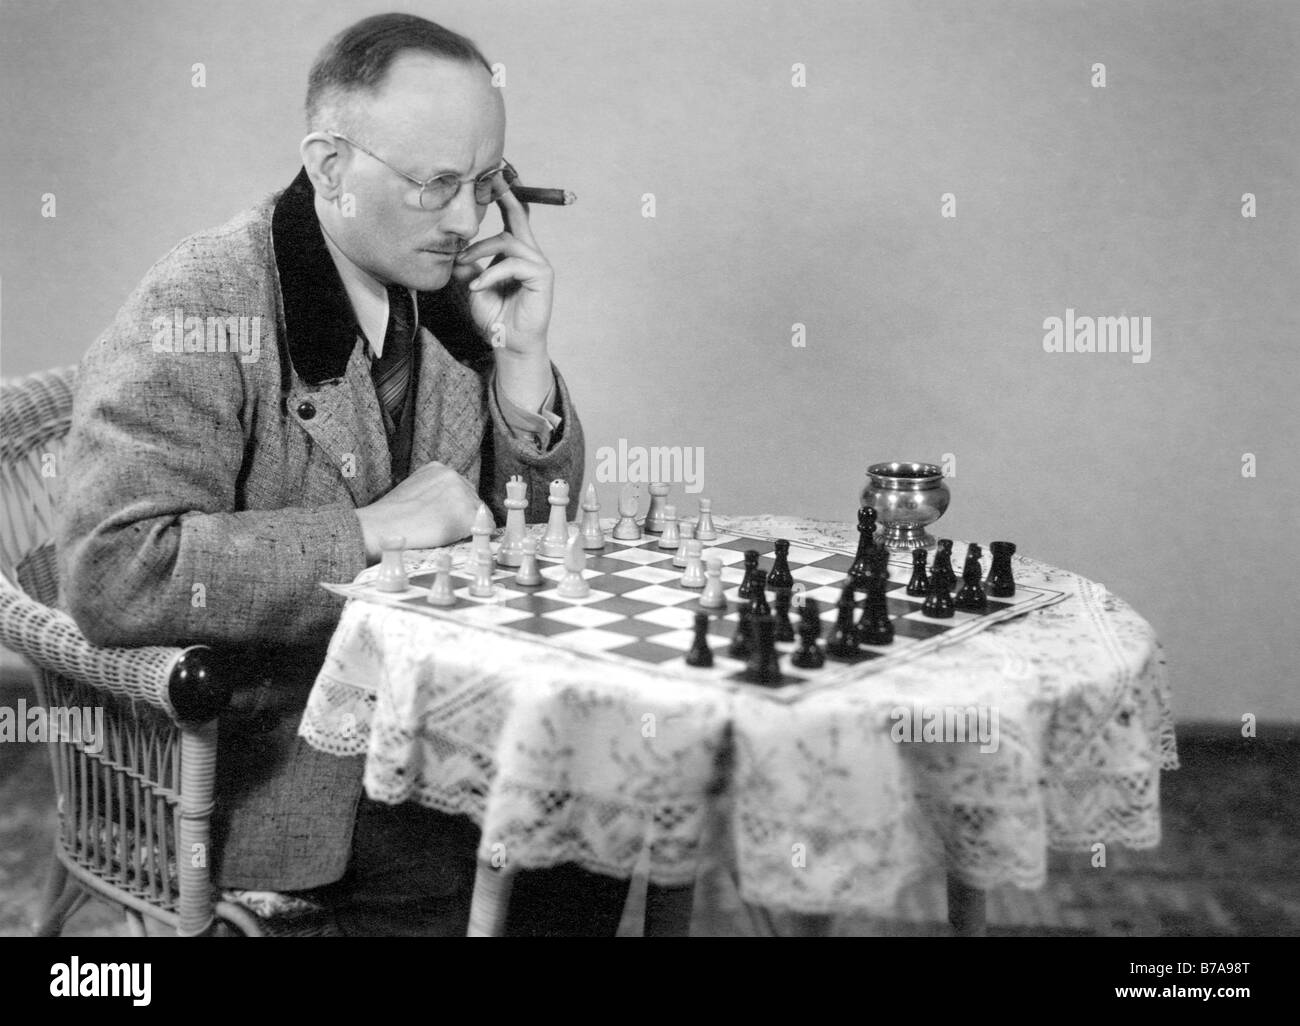 Photographie historique, joueur d'échecs, ca. 1930 Banque D'Images